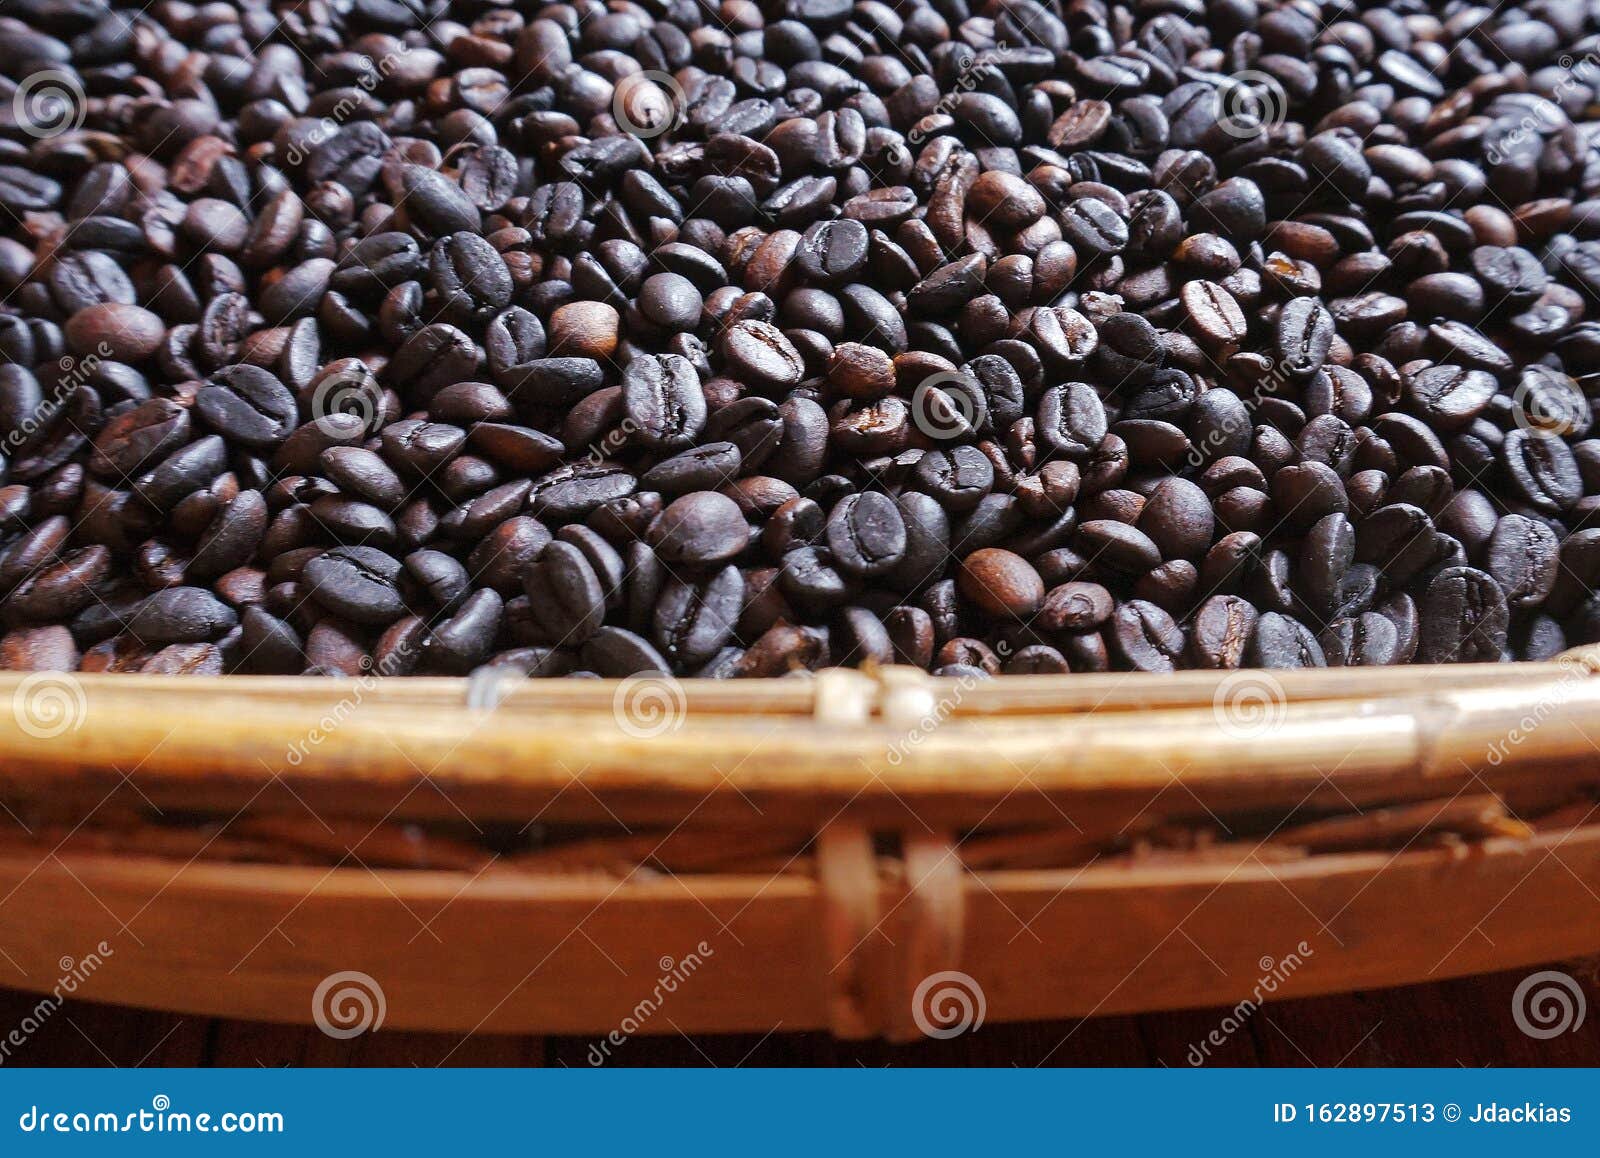 roasted coffee beans in winnower